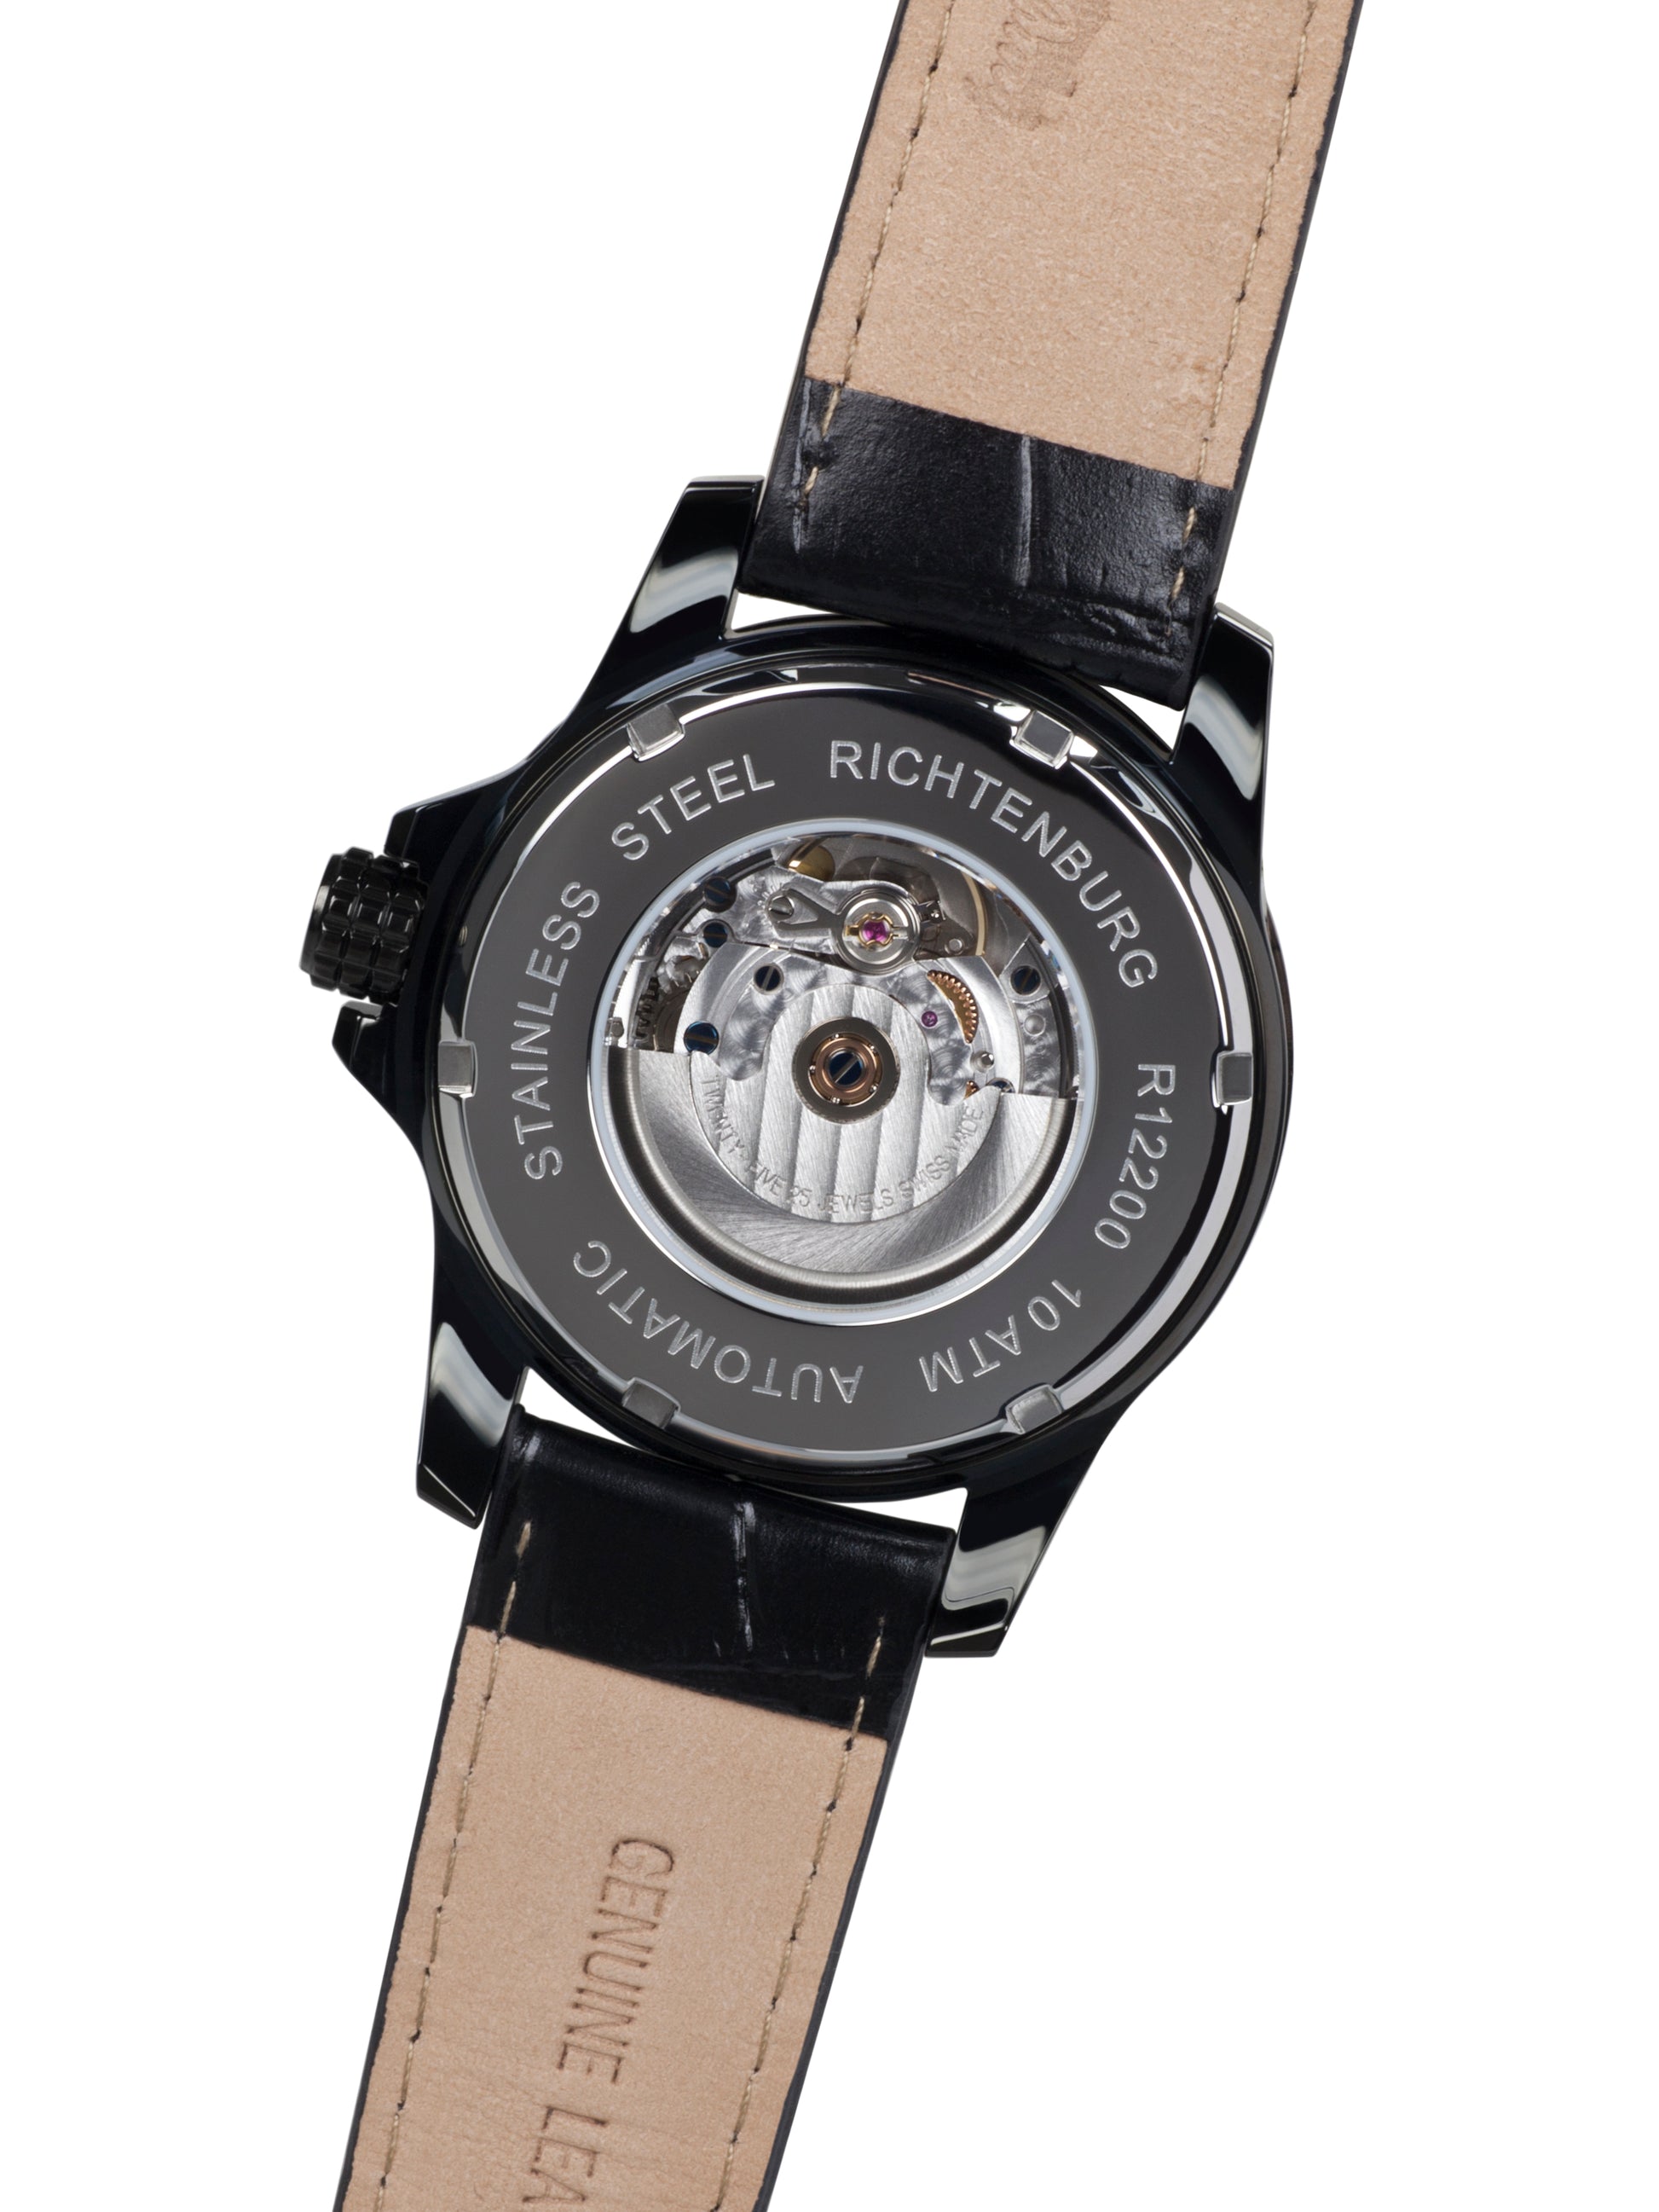 Automatic watches — Clasica — Richtenburg — white